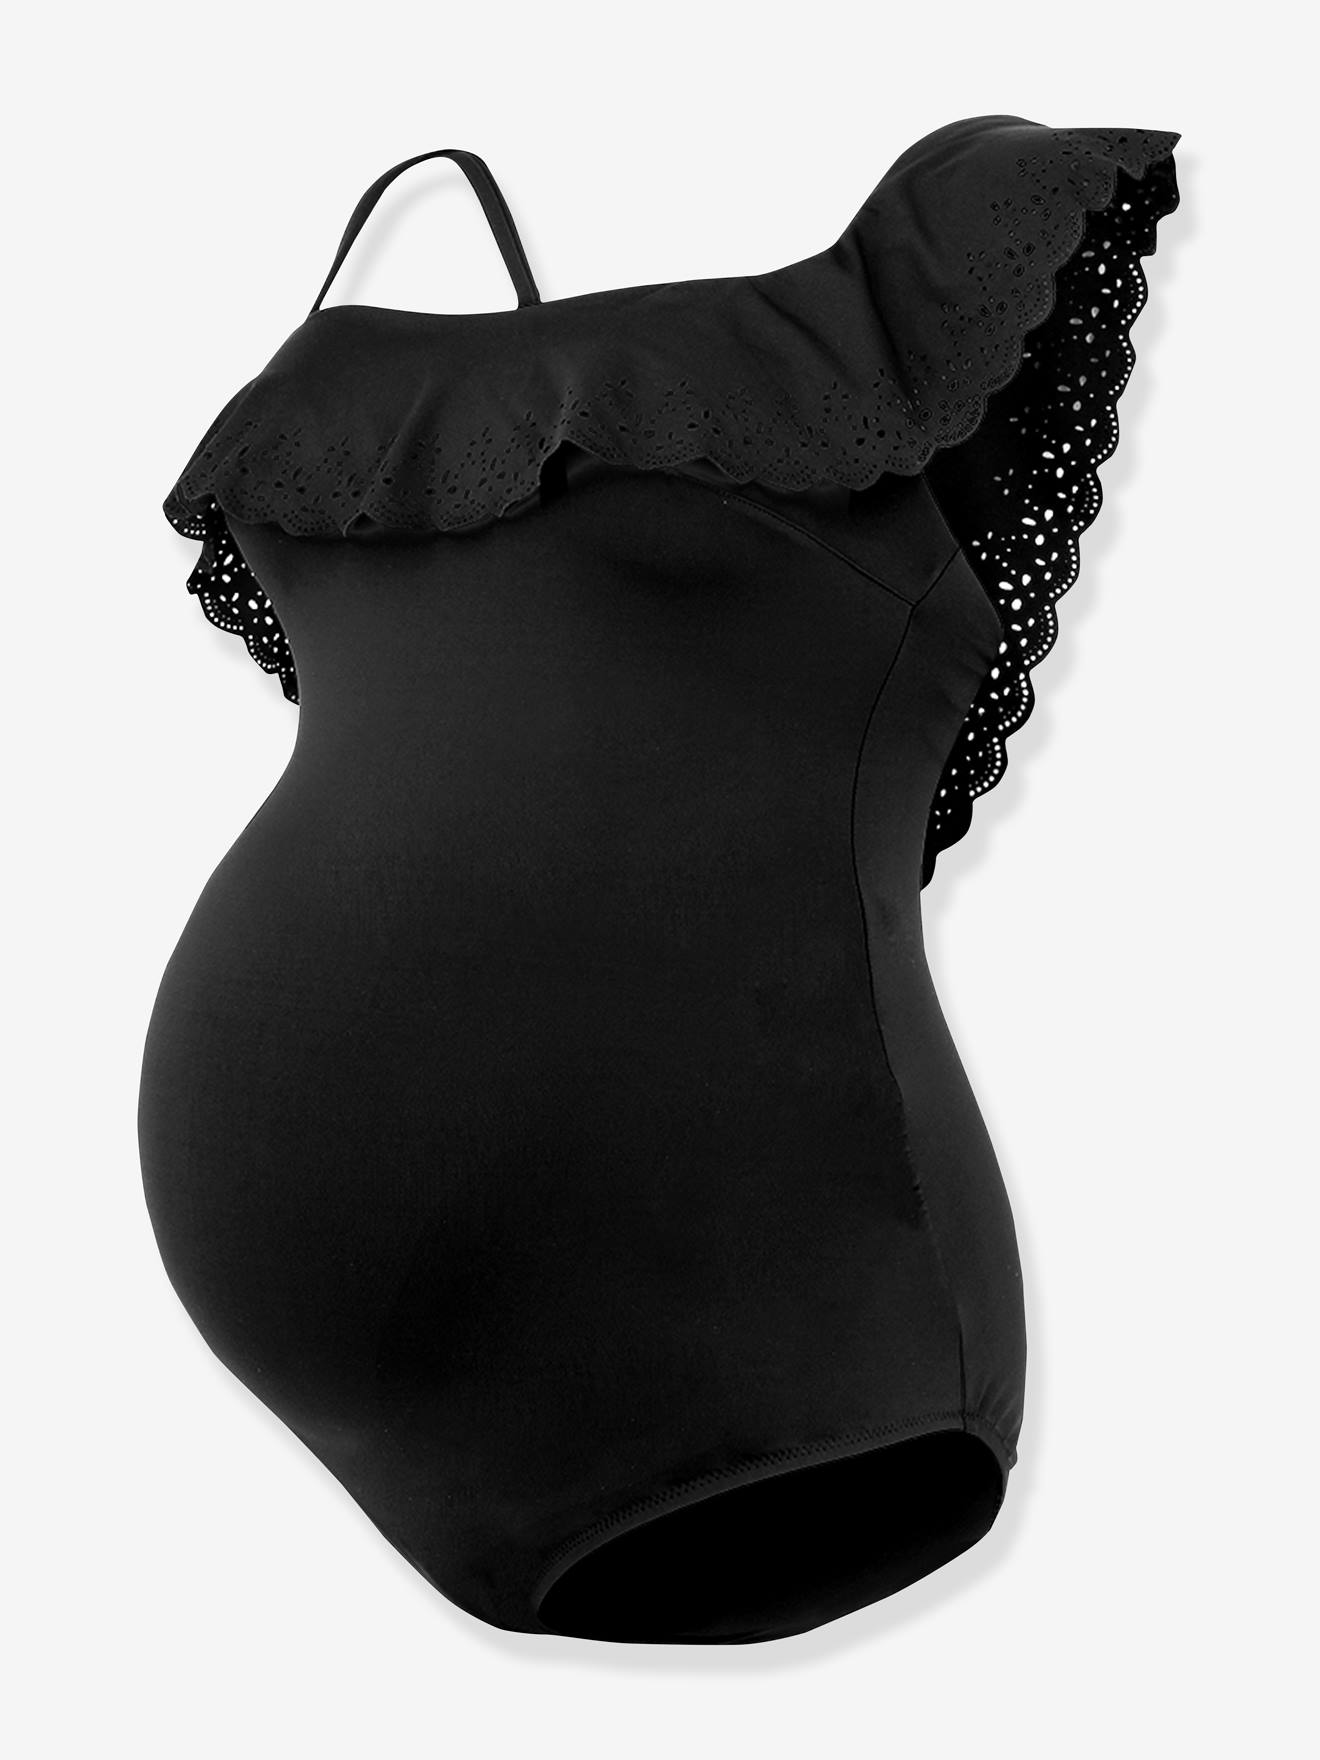 Maternity Swimsuit, Porto Vecchio by CACHE COEUR - black